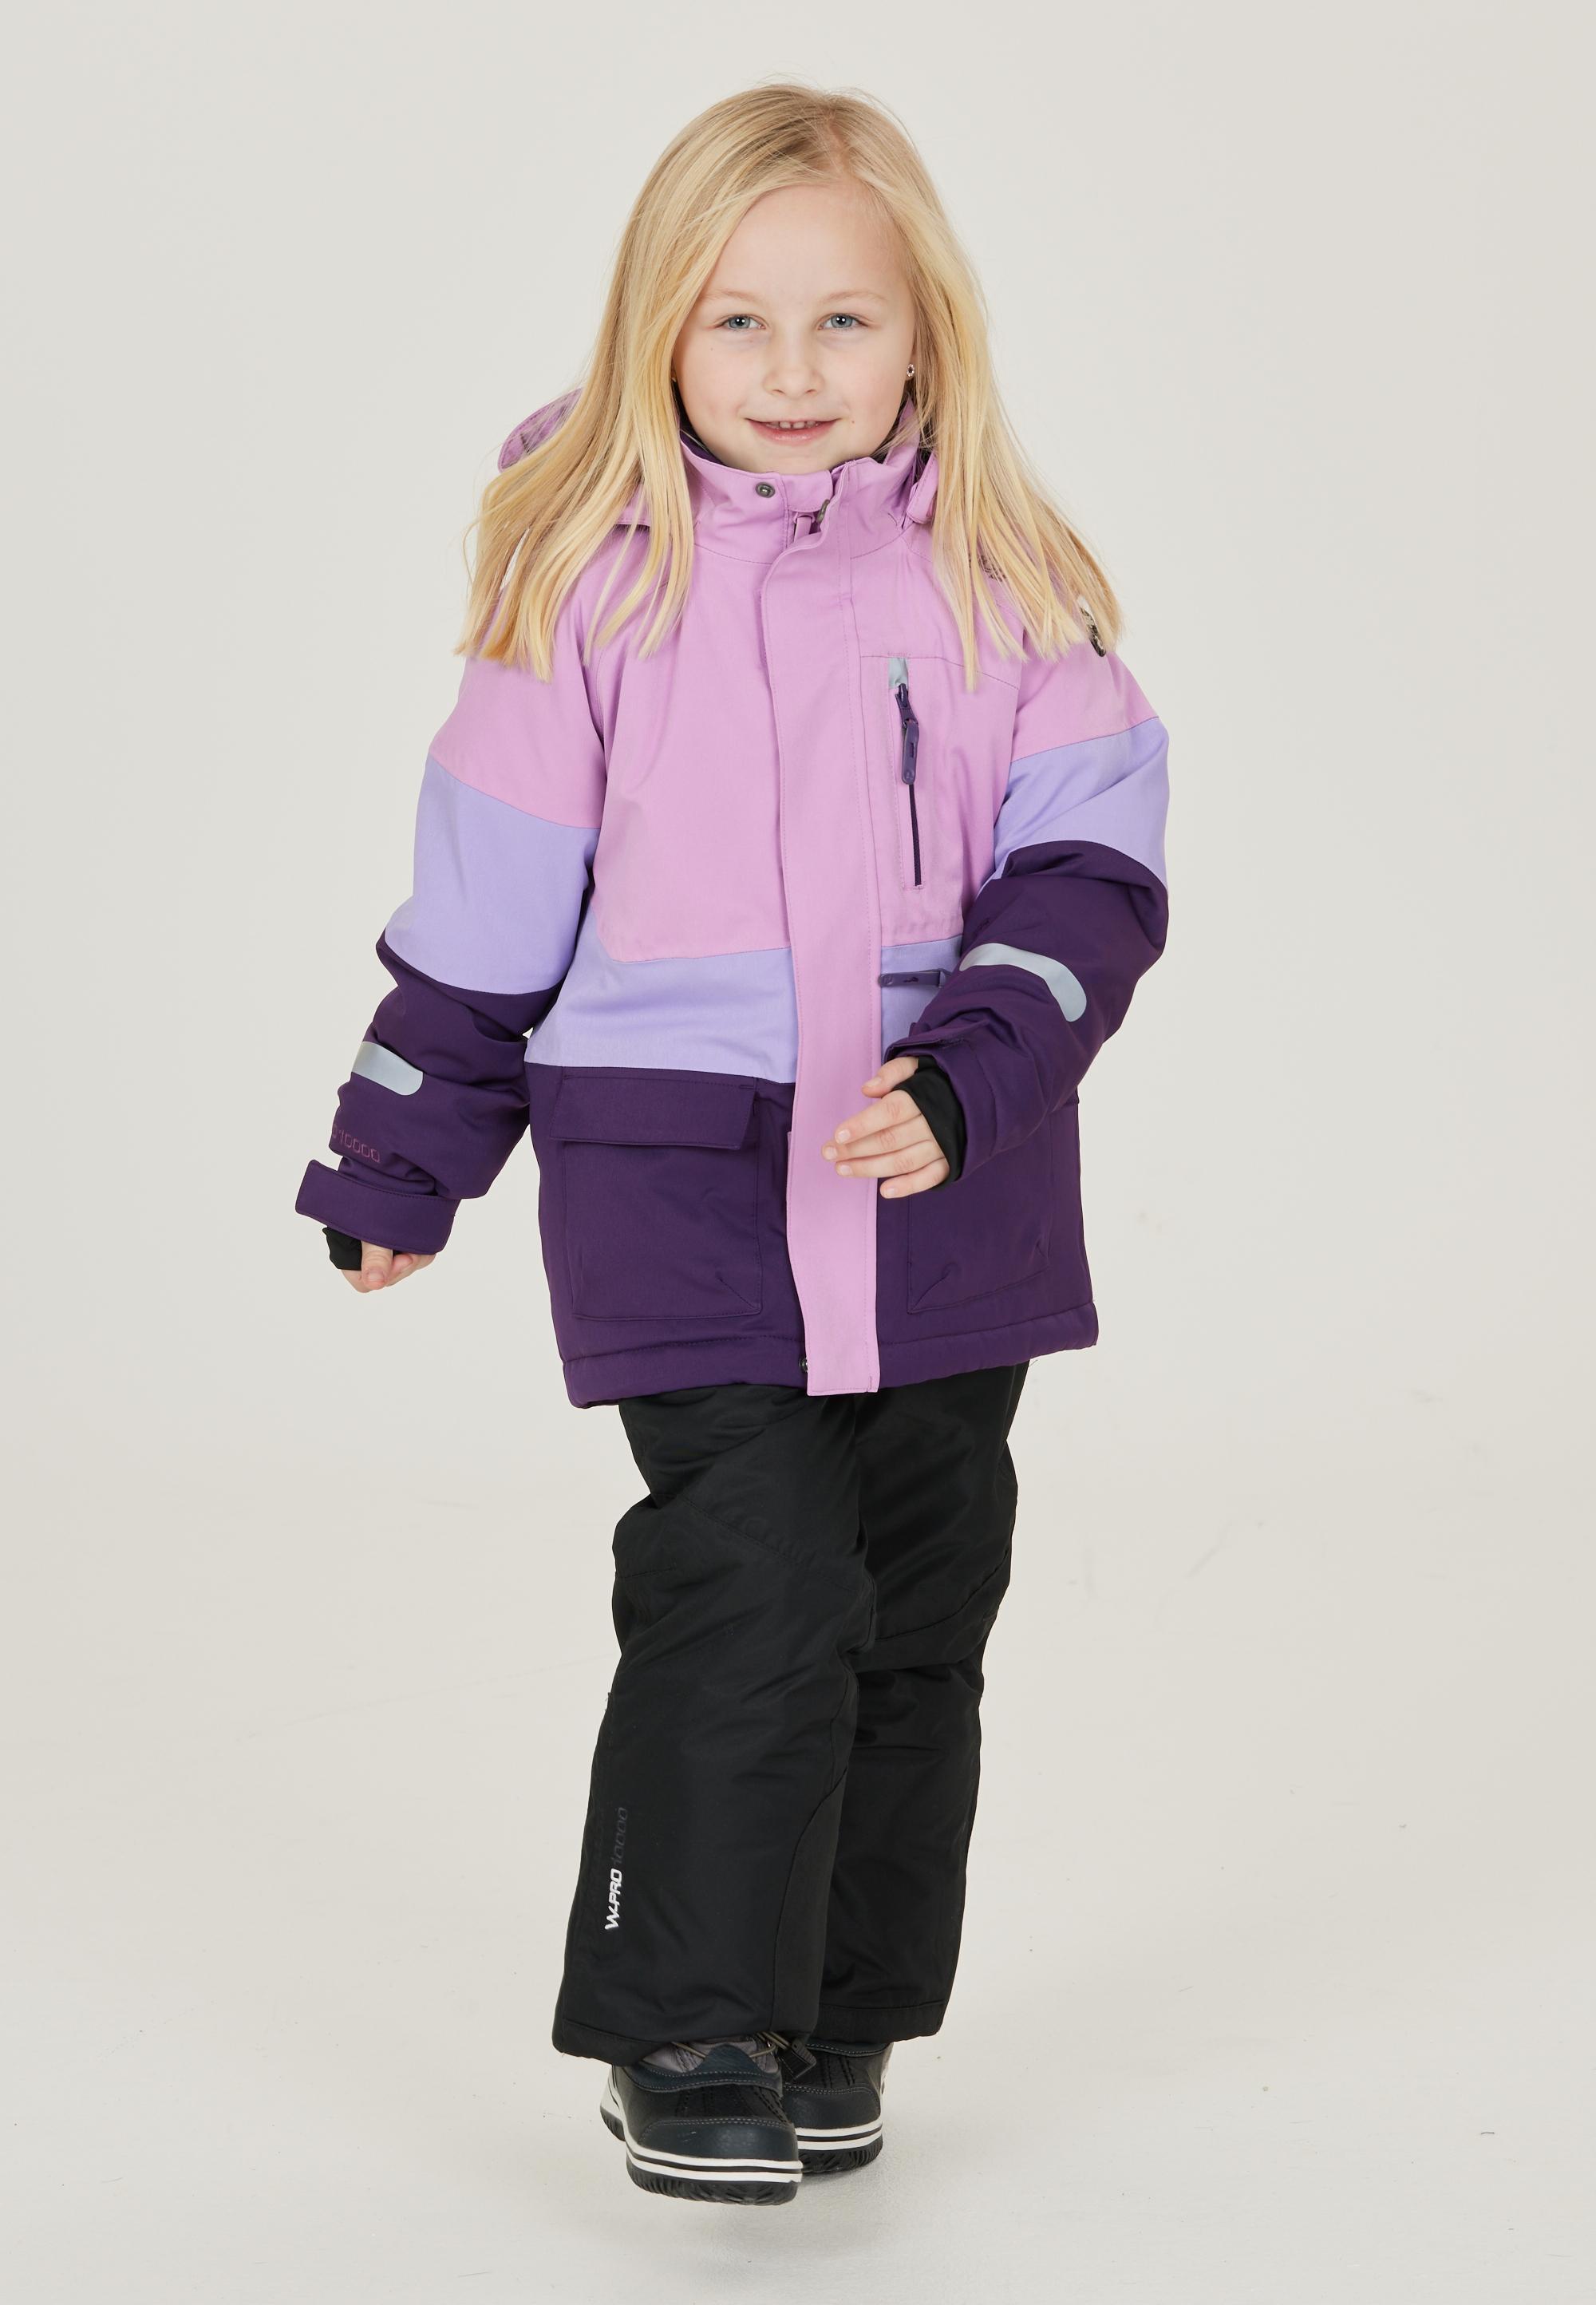 Pennant kaufen 4149 im Purple Kinder von Online Taylora ZigZag Skijacke Shop SportScheck